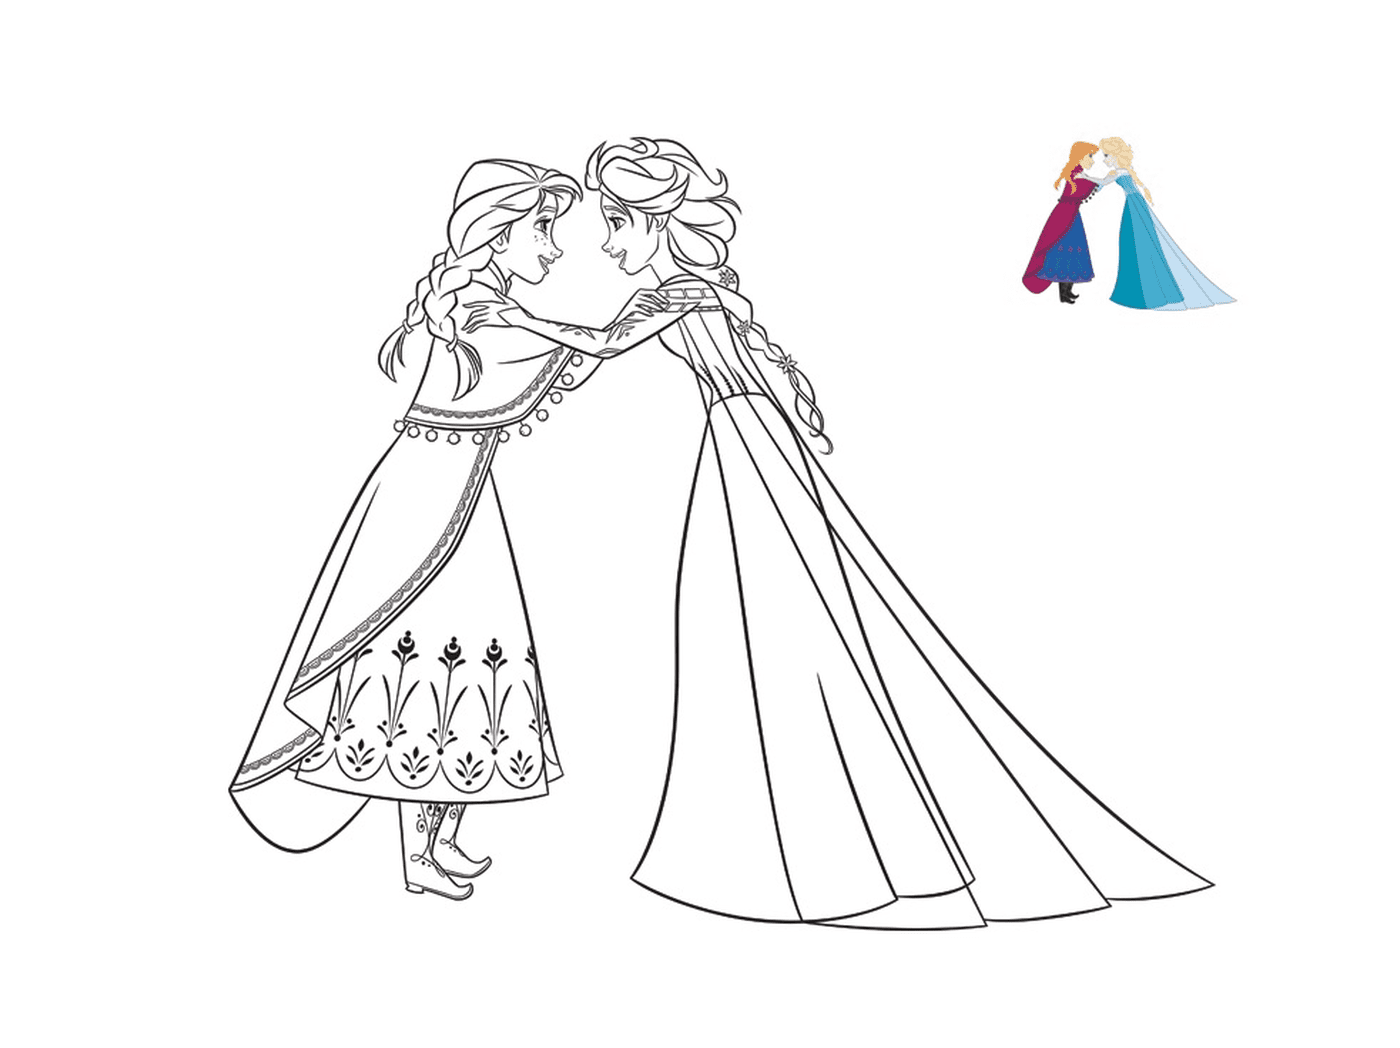  Anna le confía un secreto a Elsa 